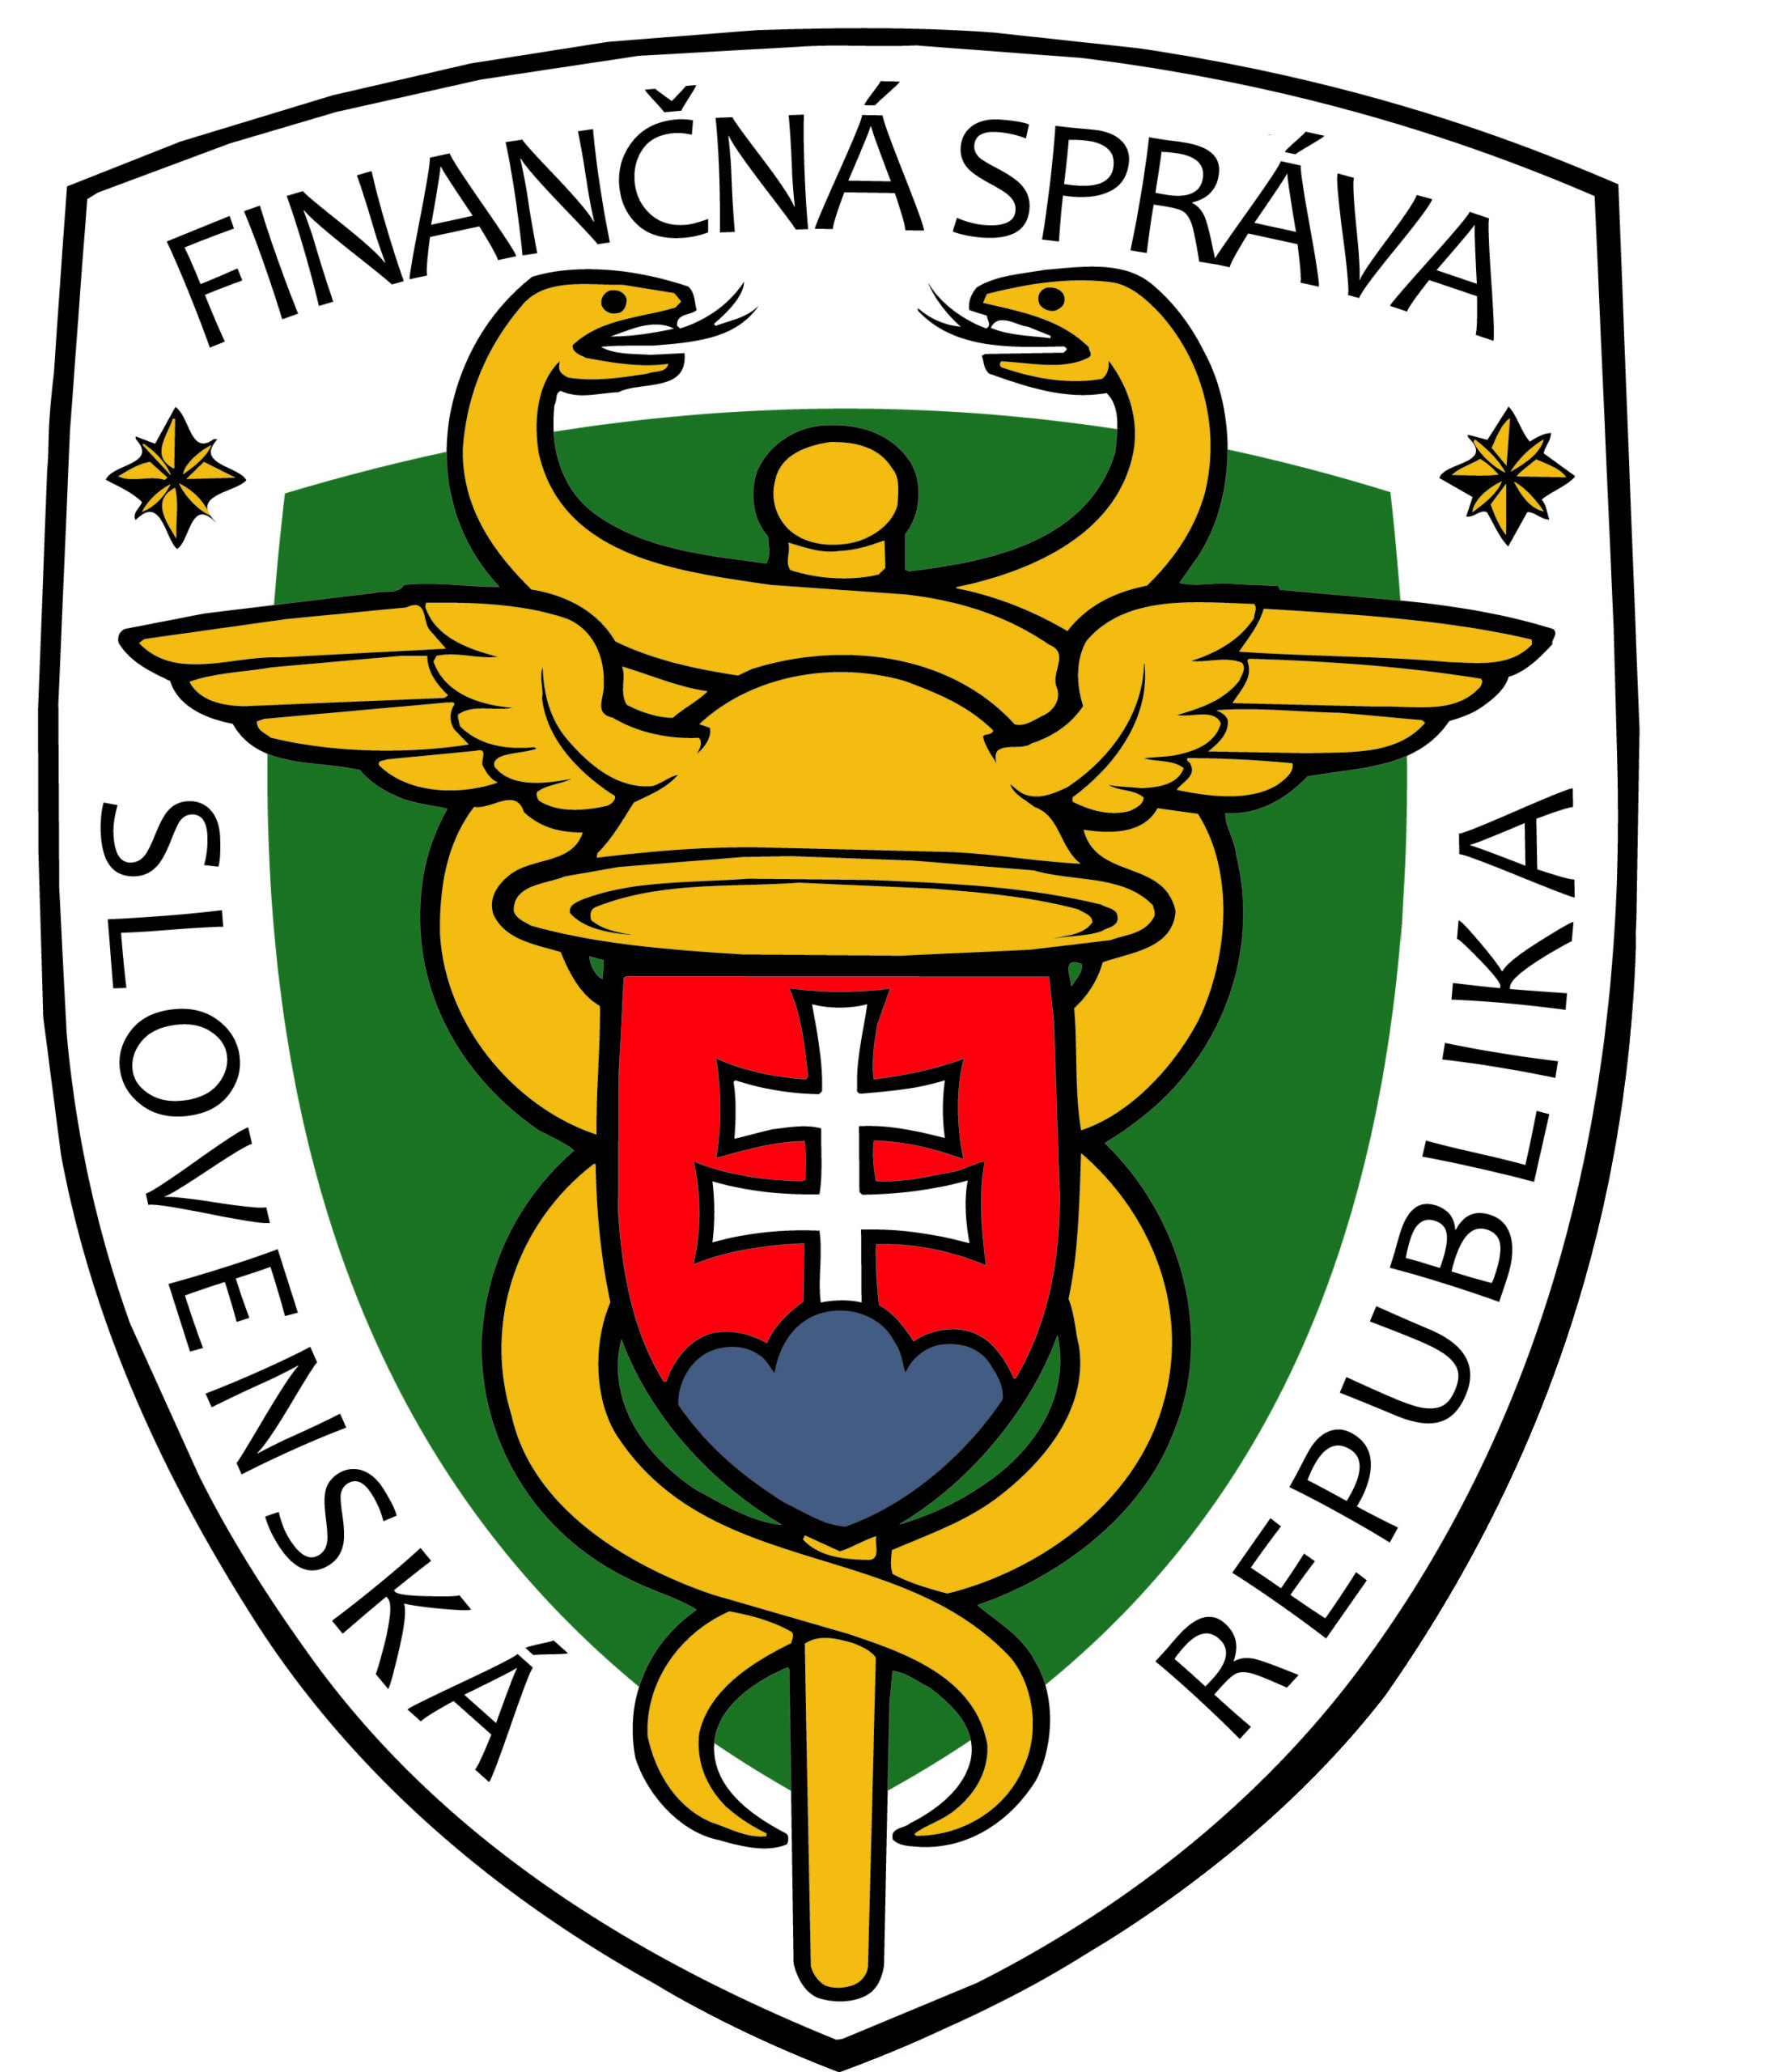 Finančná správa Slovenskej republiky